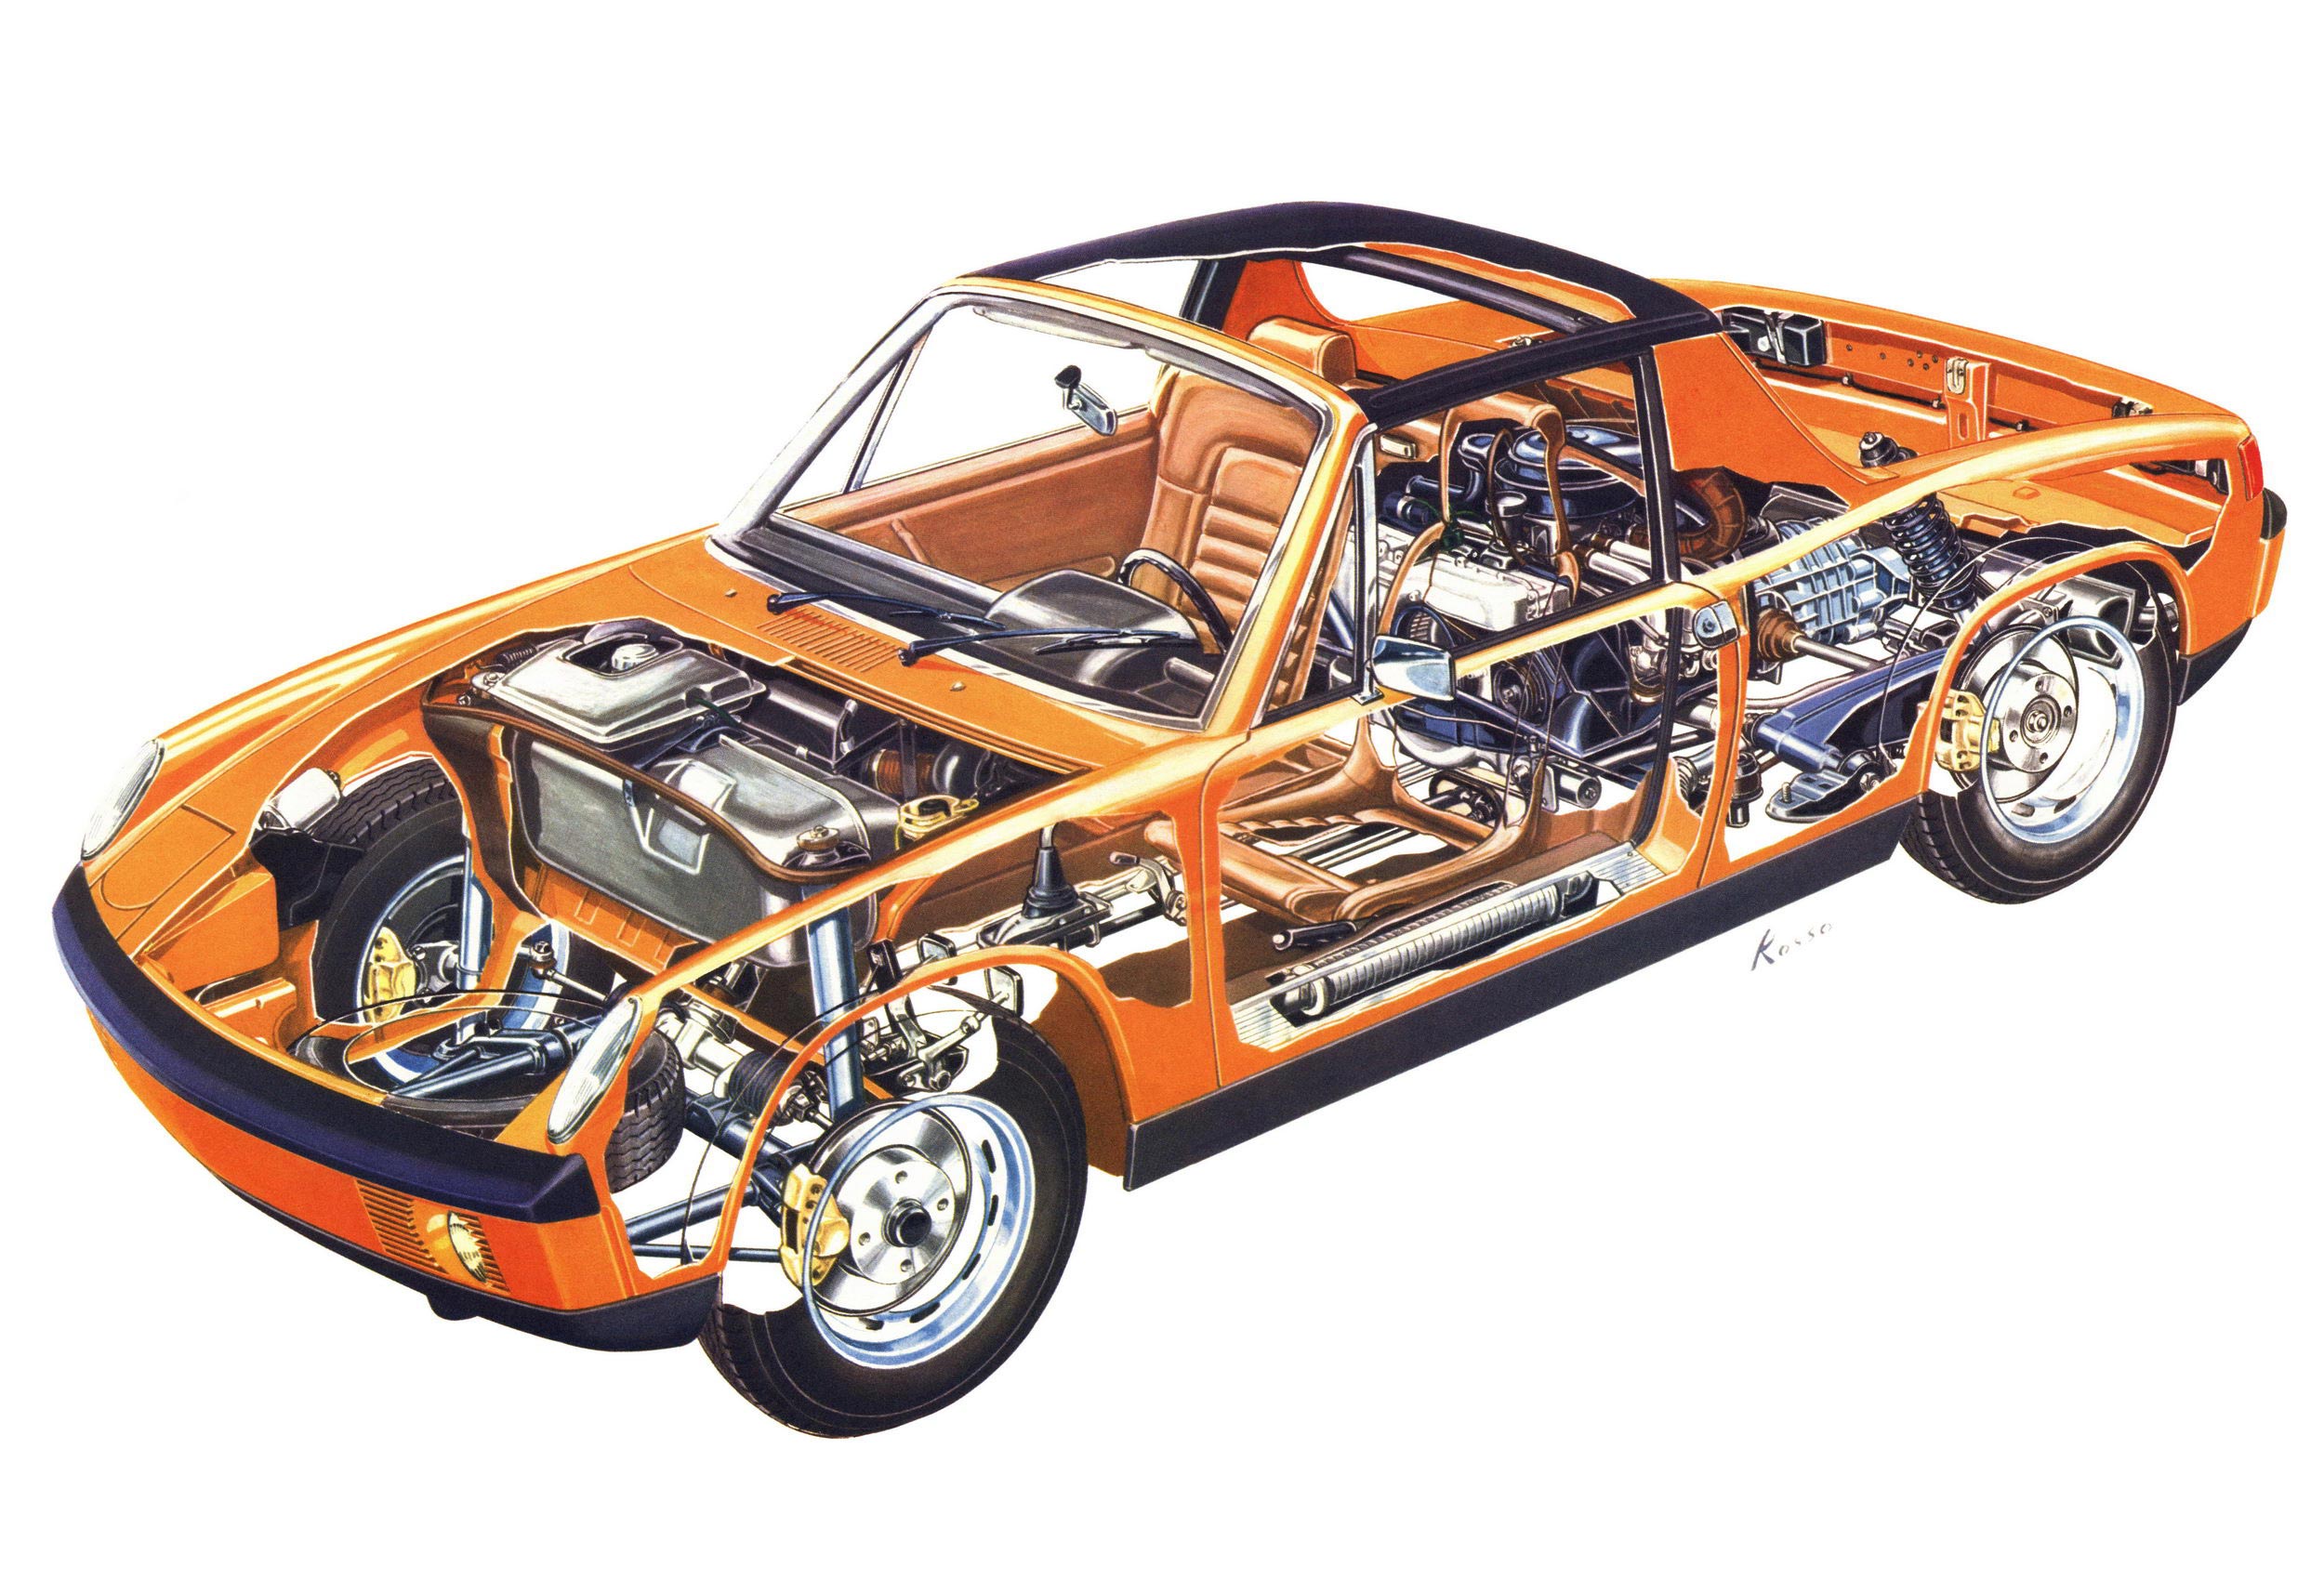 Porsche 914 cutaway drawing